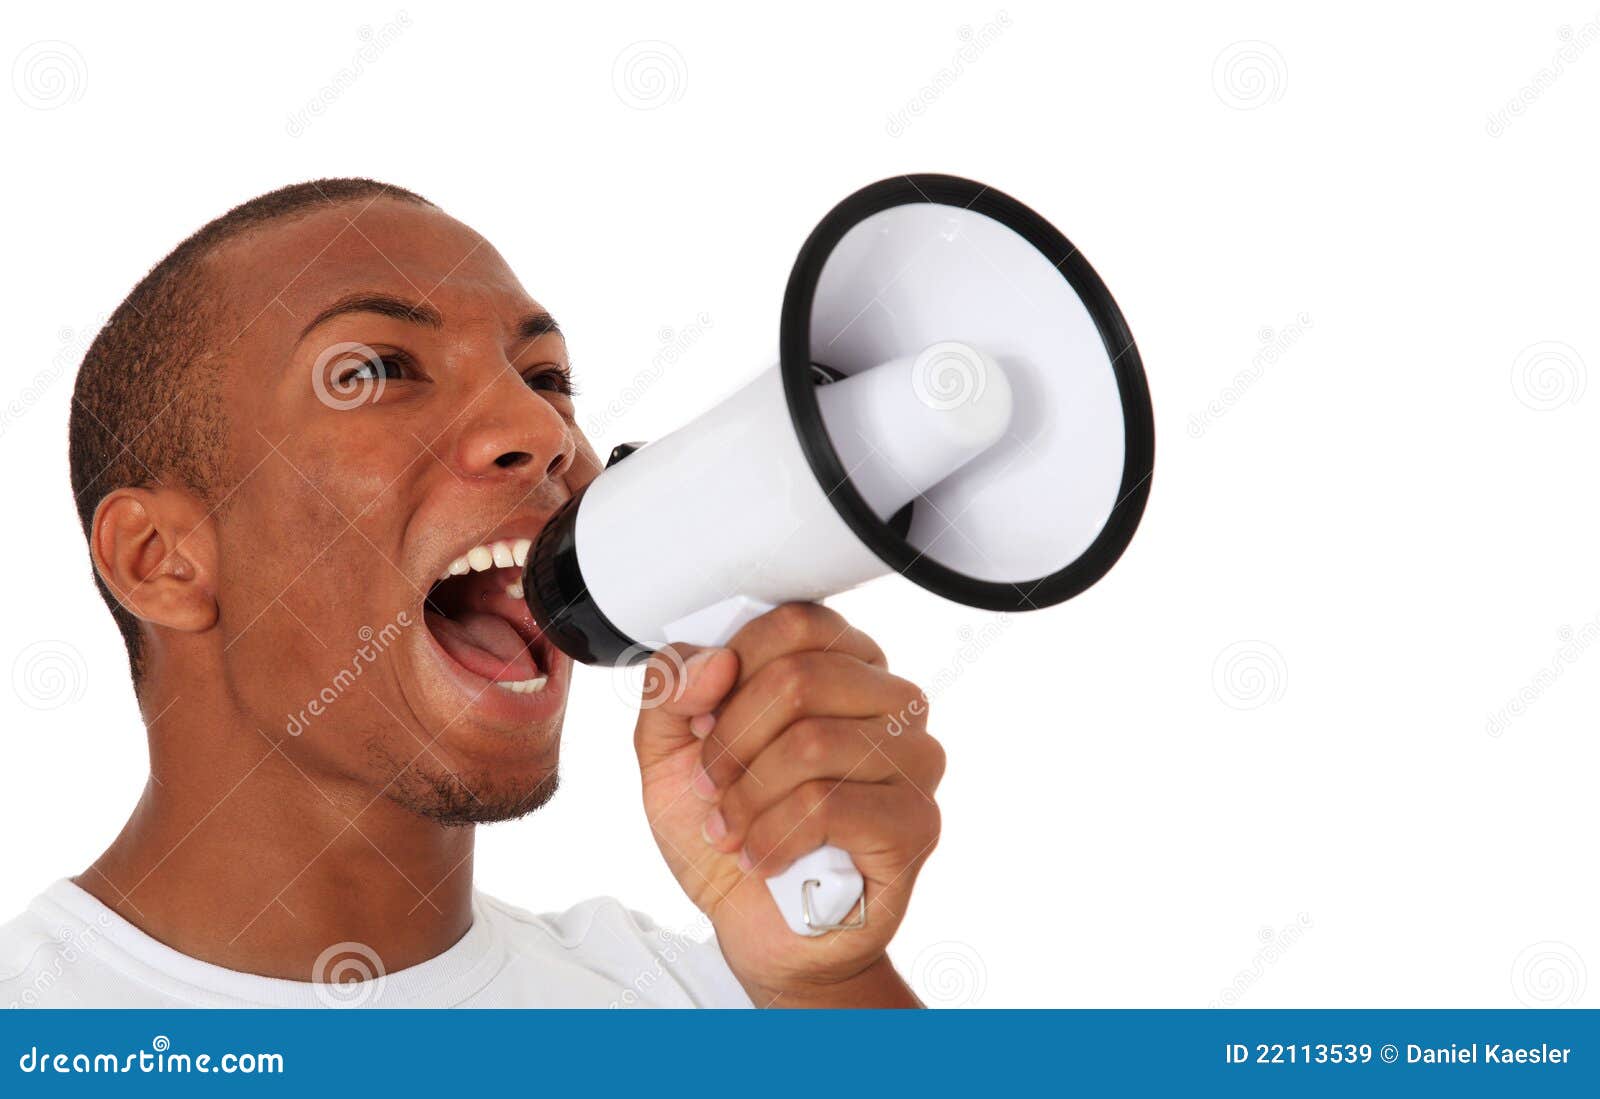 black man shouting through megaphone